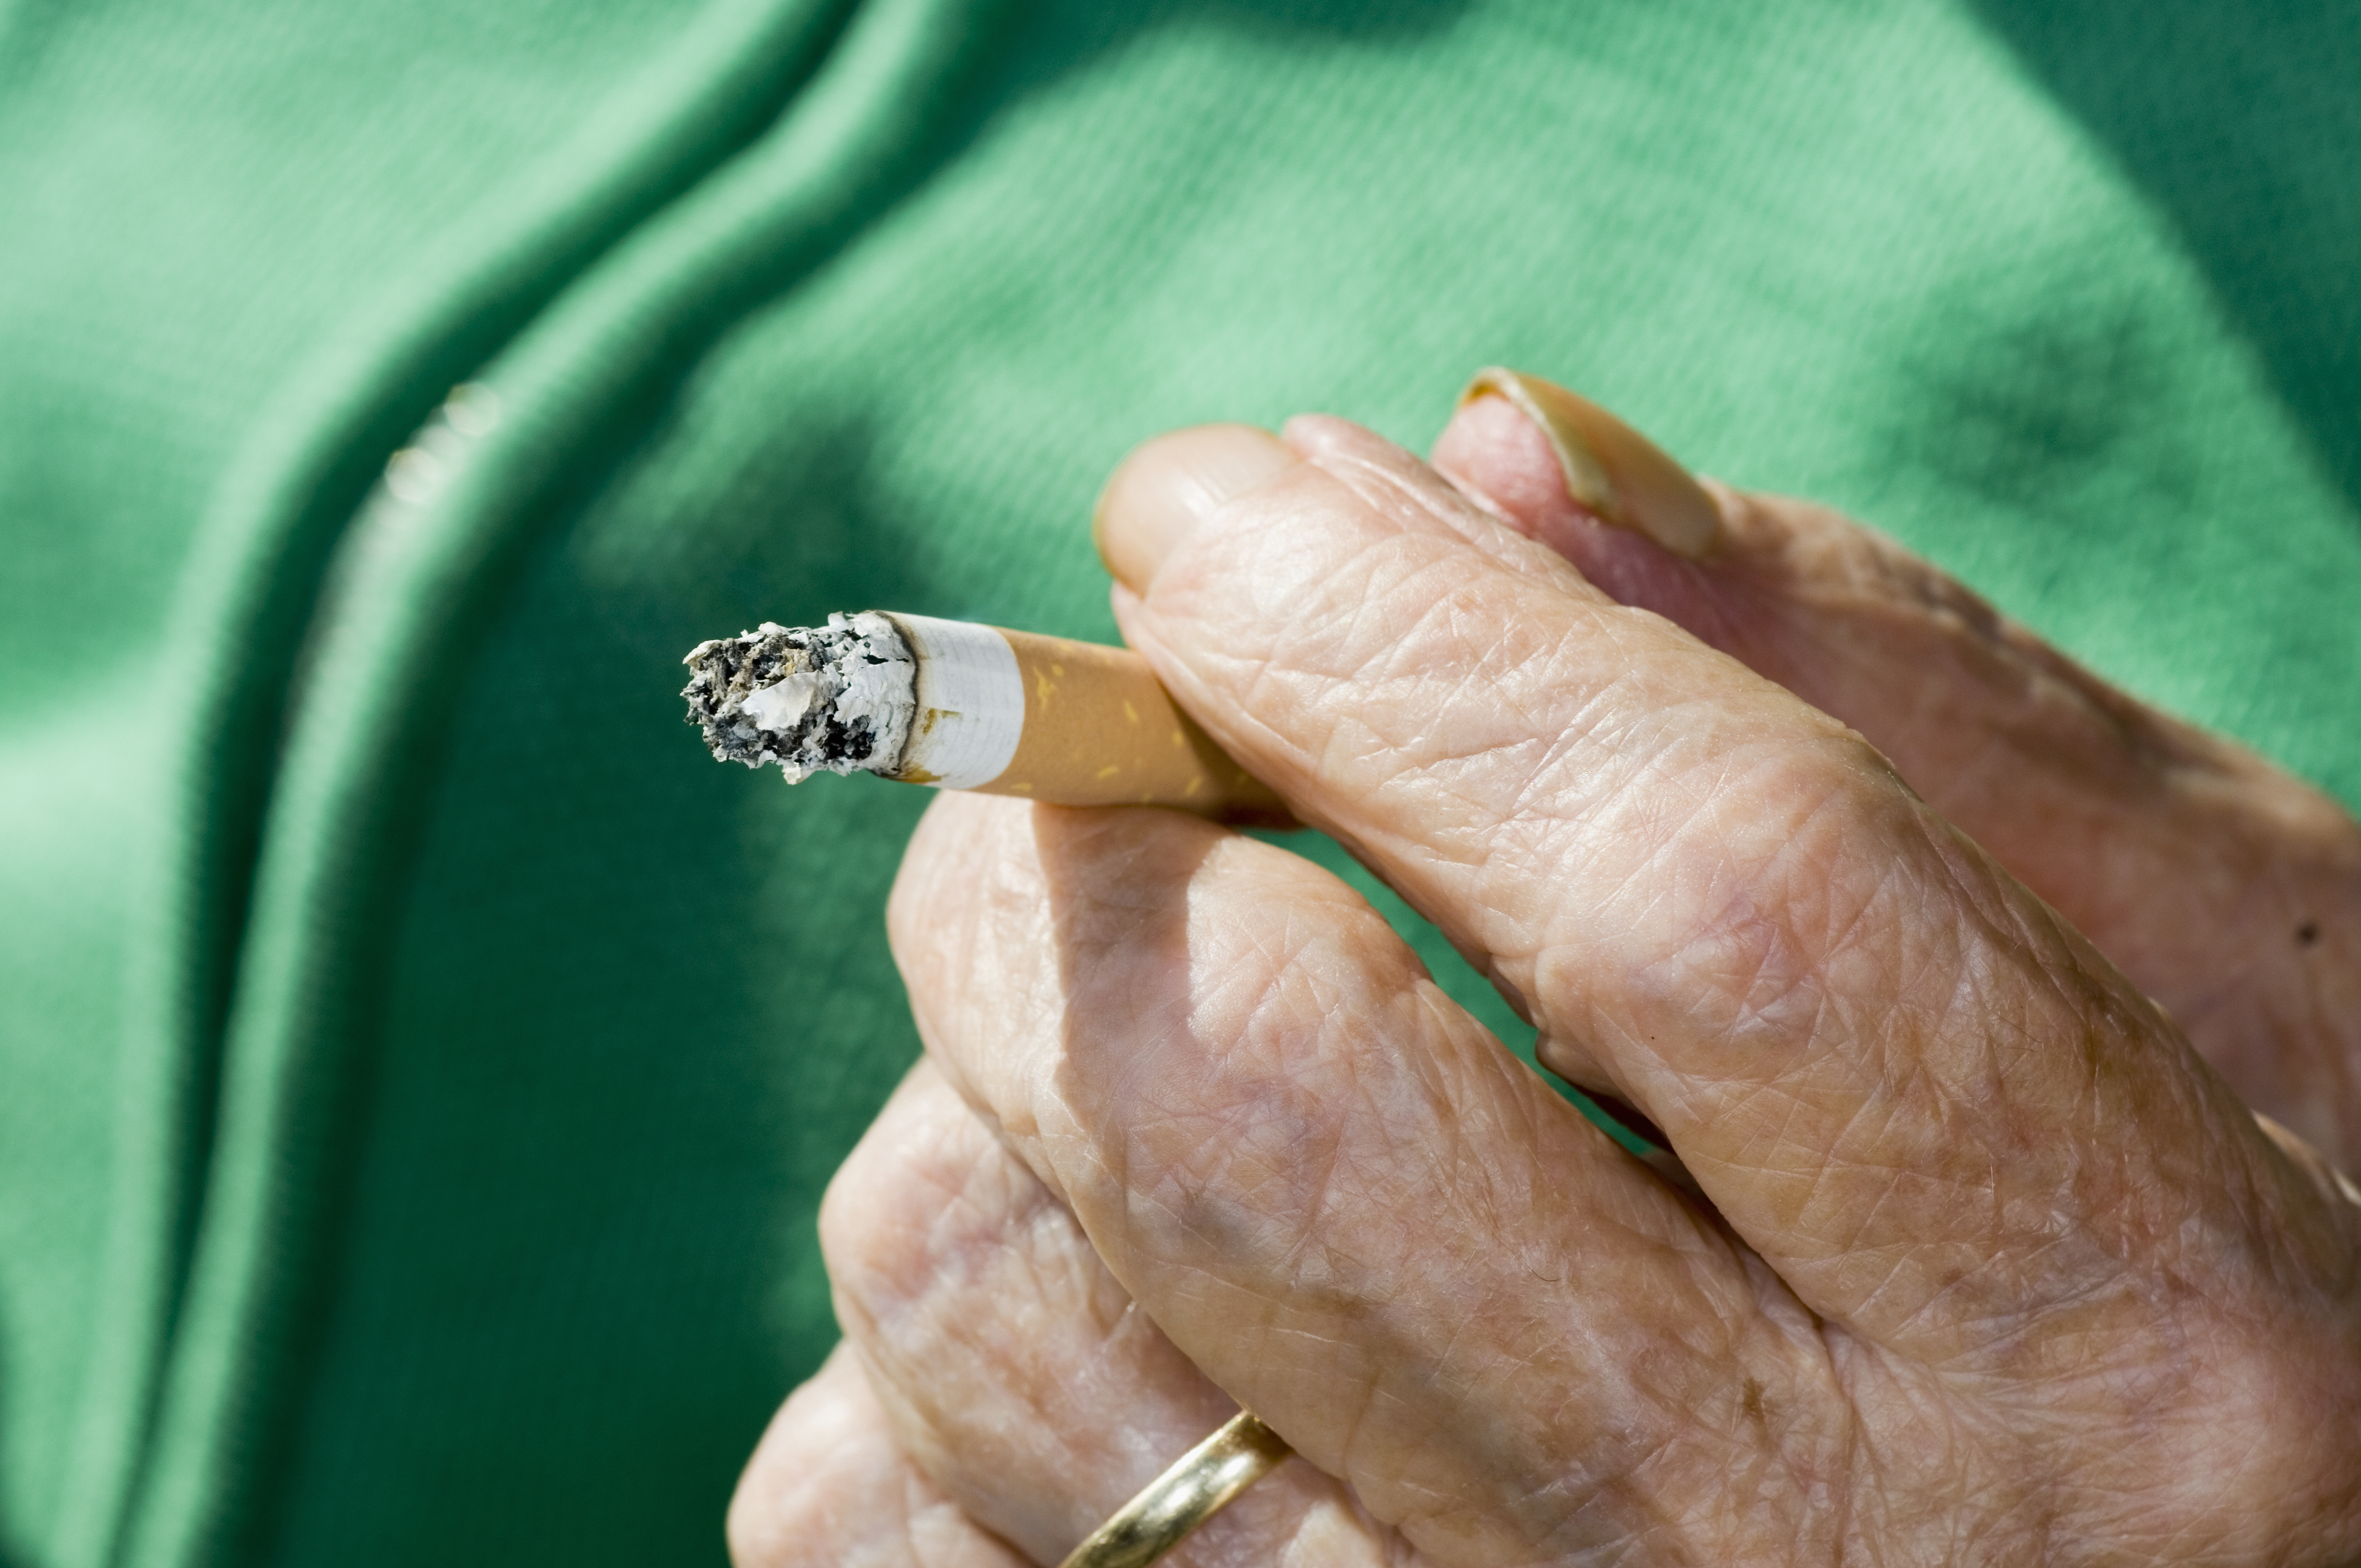 Elderly Hand Holding Cigarette Butt